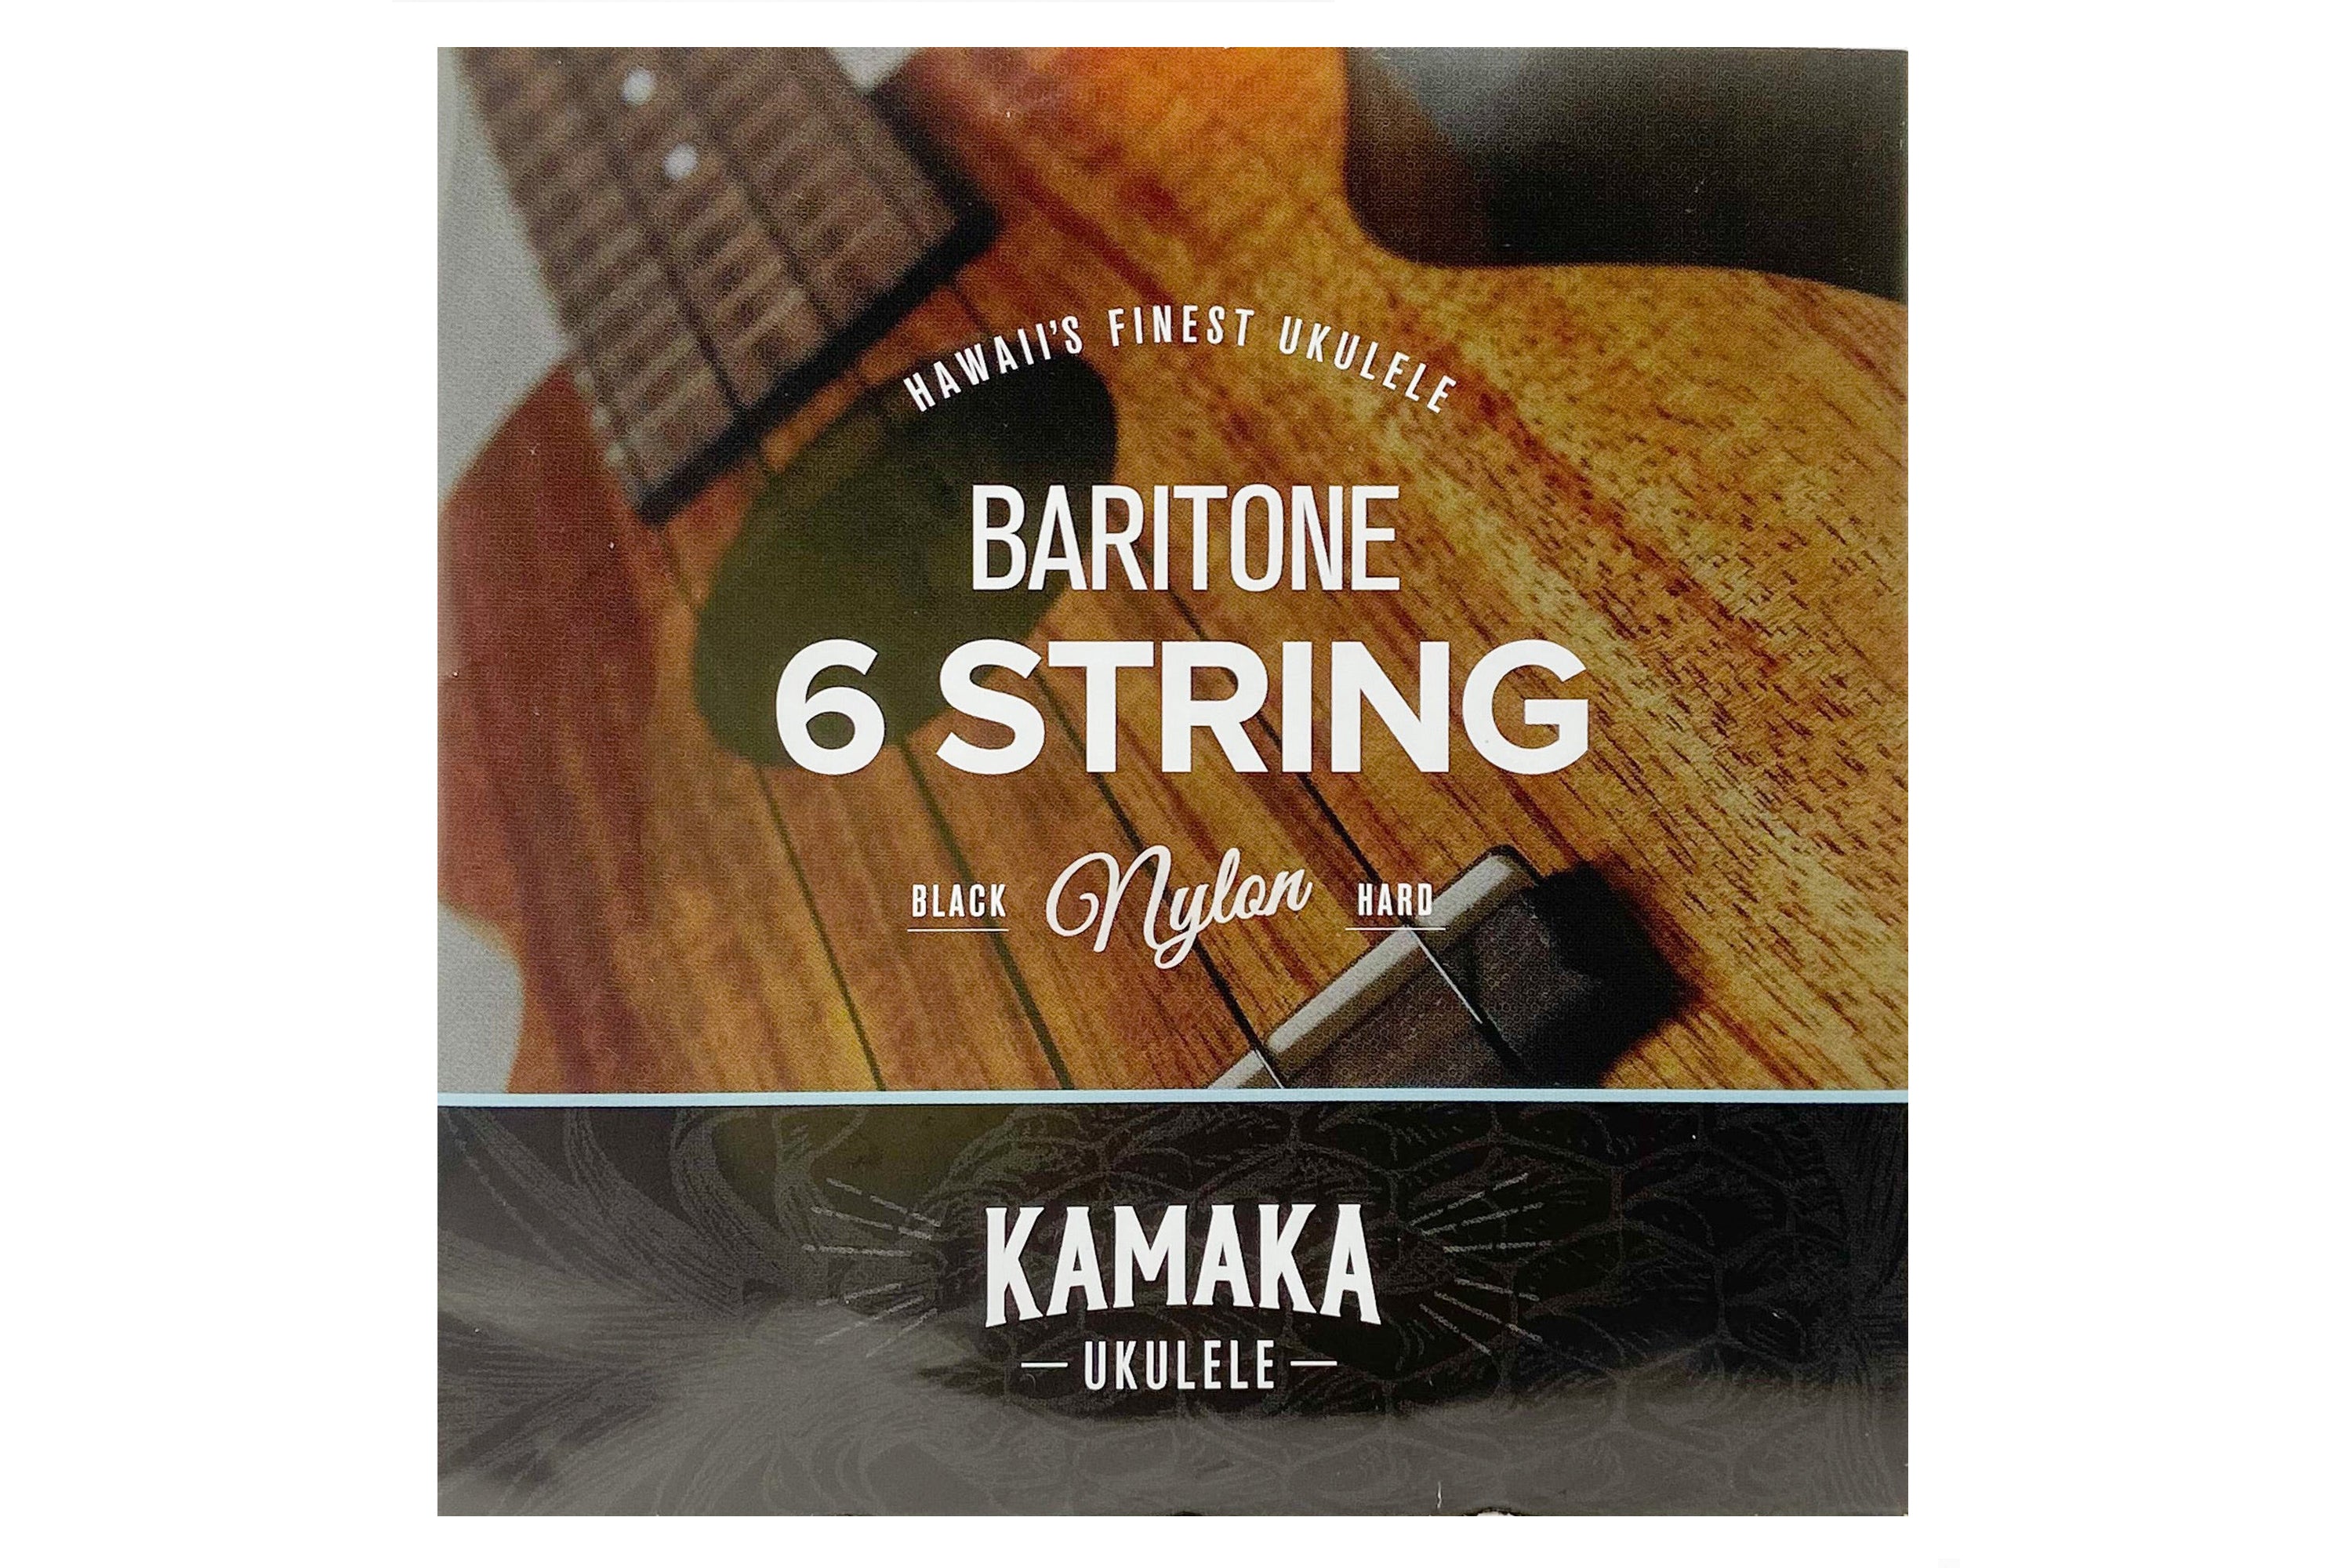 Kamaka 6-String Baritone Ukulele Strings